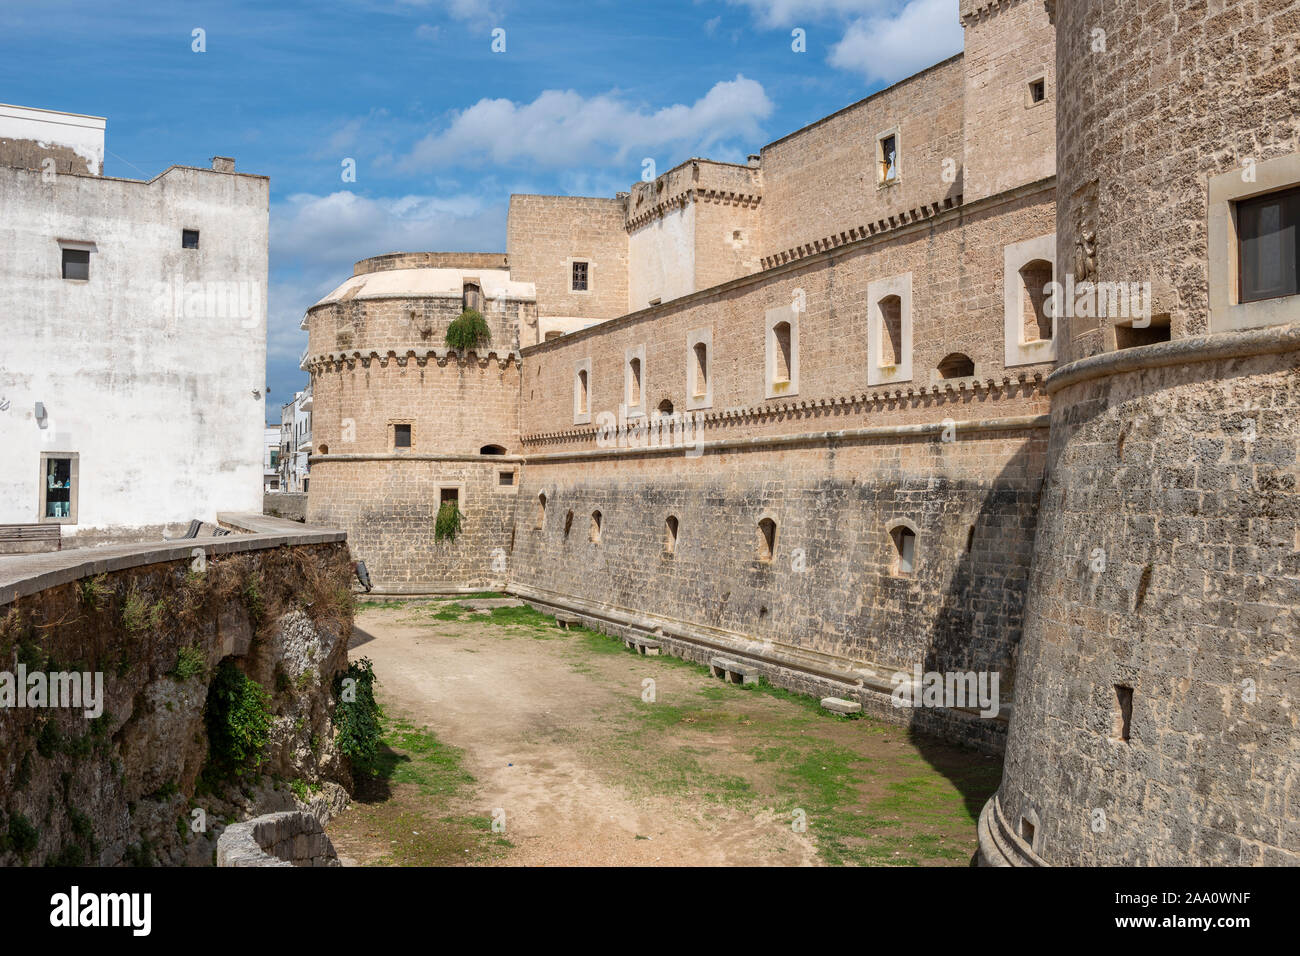 Exterior of Castello de’ Monti in Corigliano d'Otranto, Apulia (Puglia) in Southern Italy Stock Photo